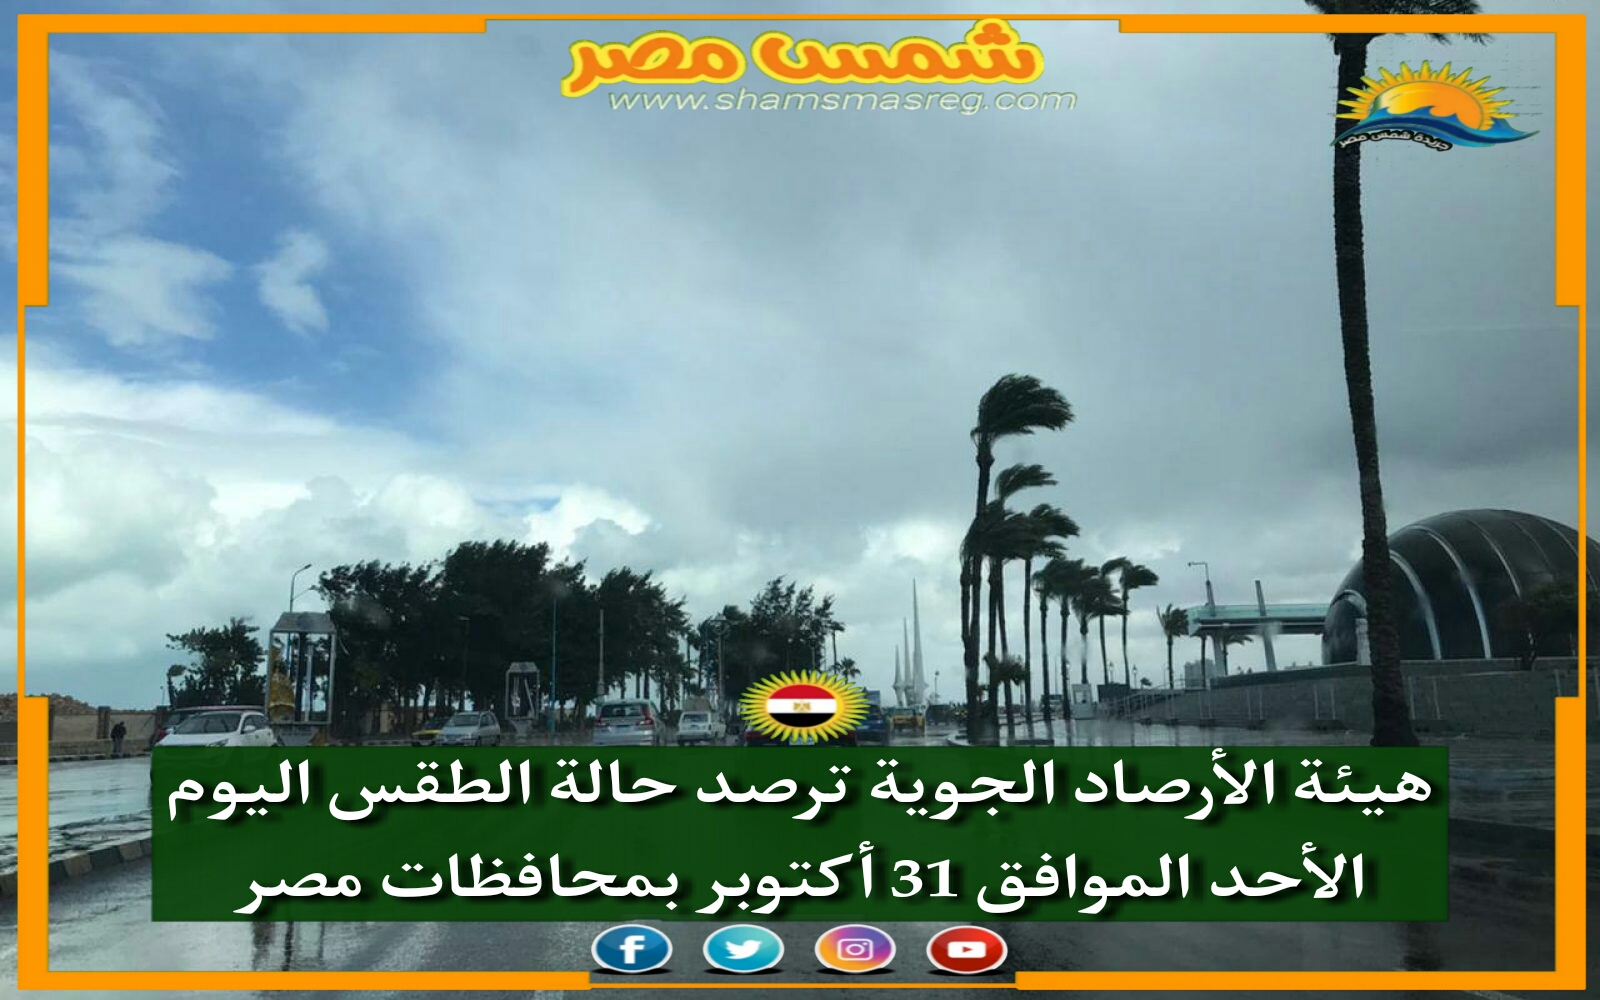 |شمس مصر|.. هيئة الأرصاد الجوية ترصد حالة الطقس اليوم الأحد الموافق 31 أكتوبر بمحافظات مصر 